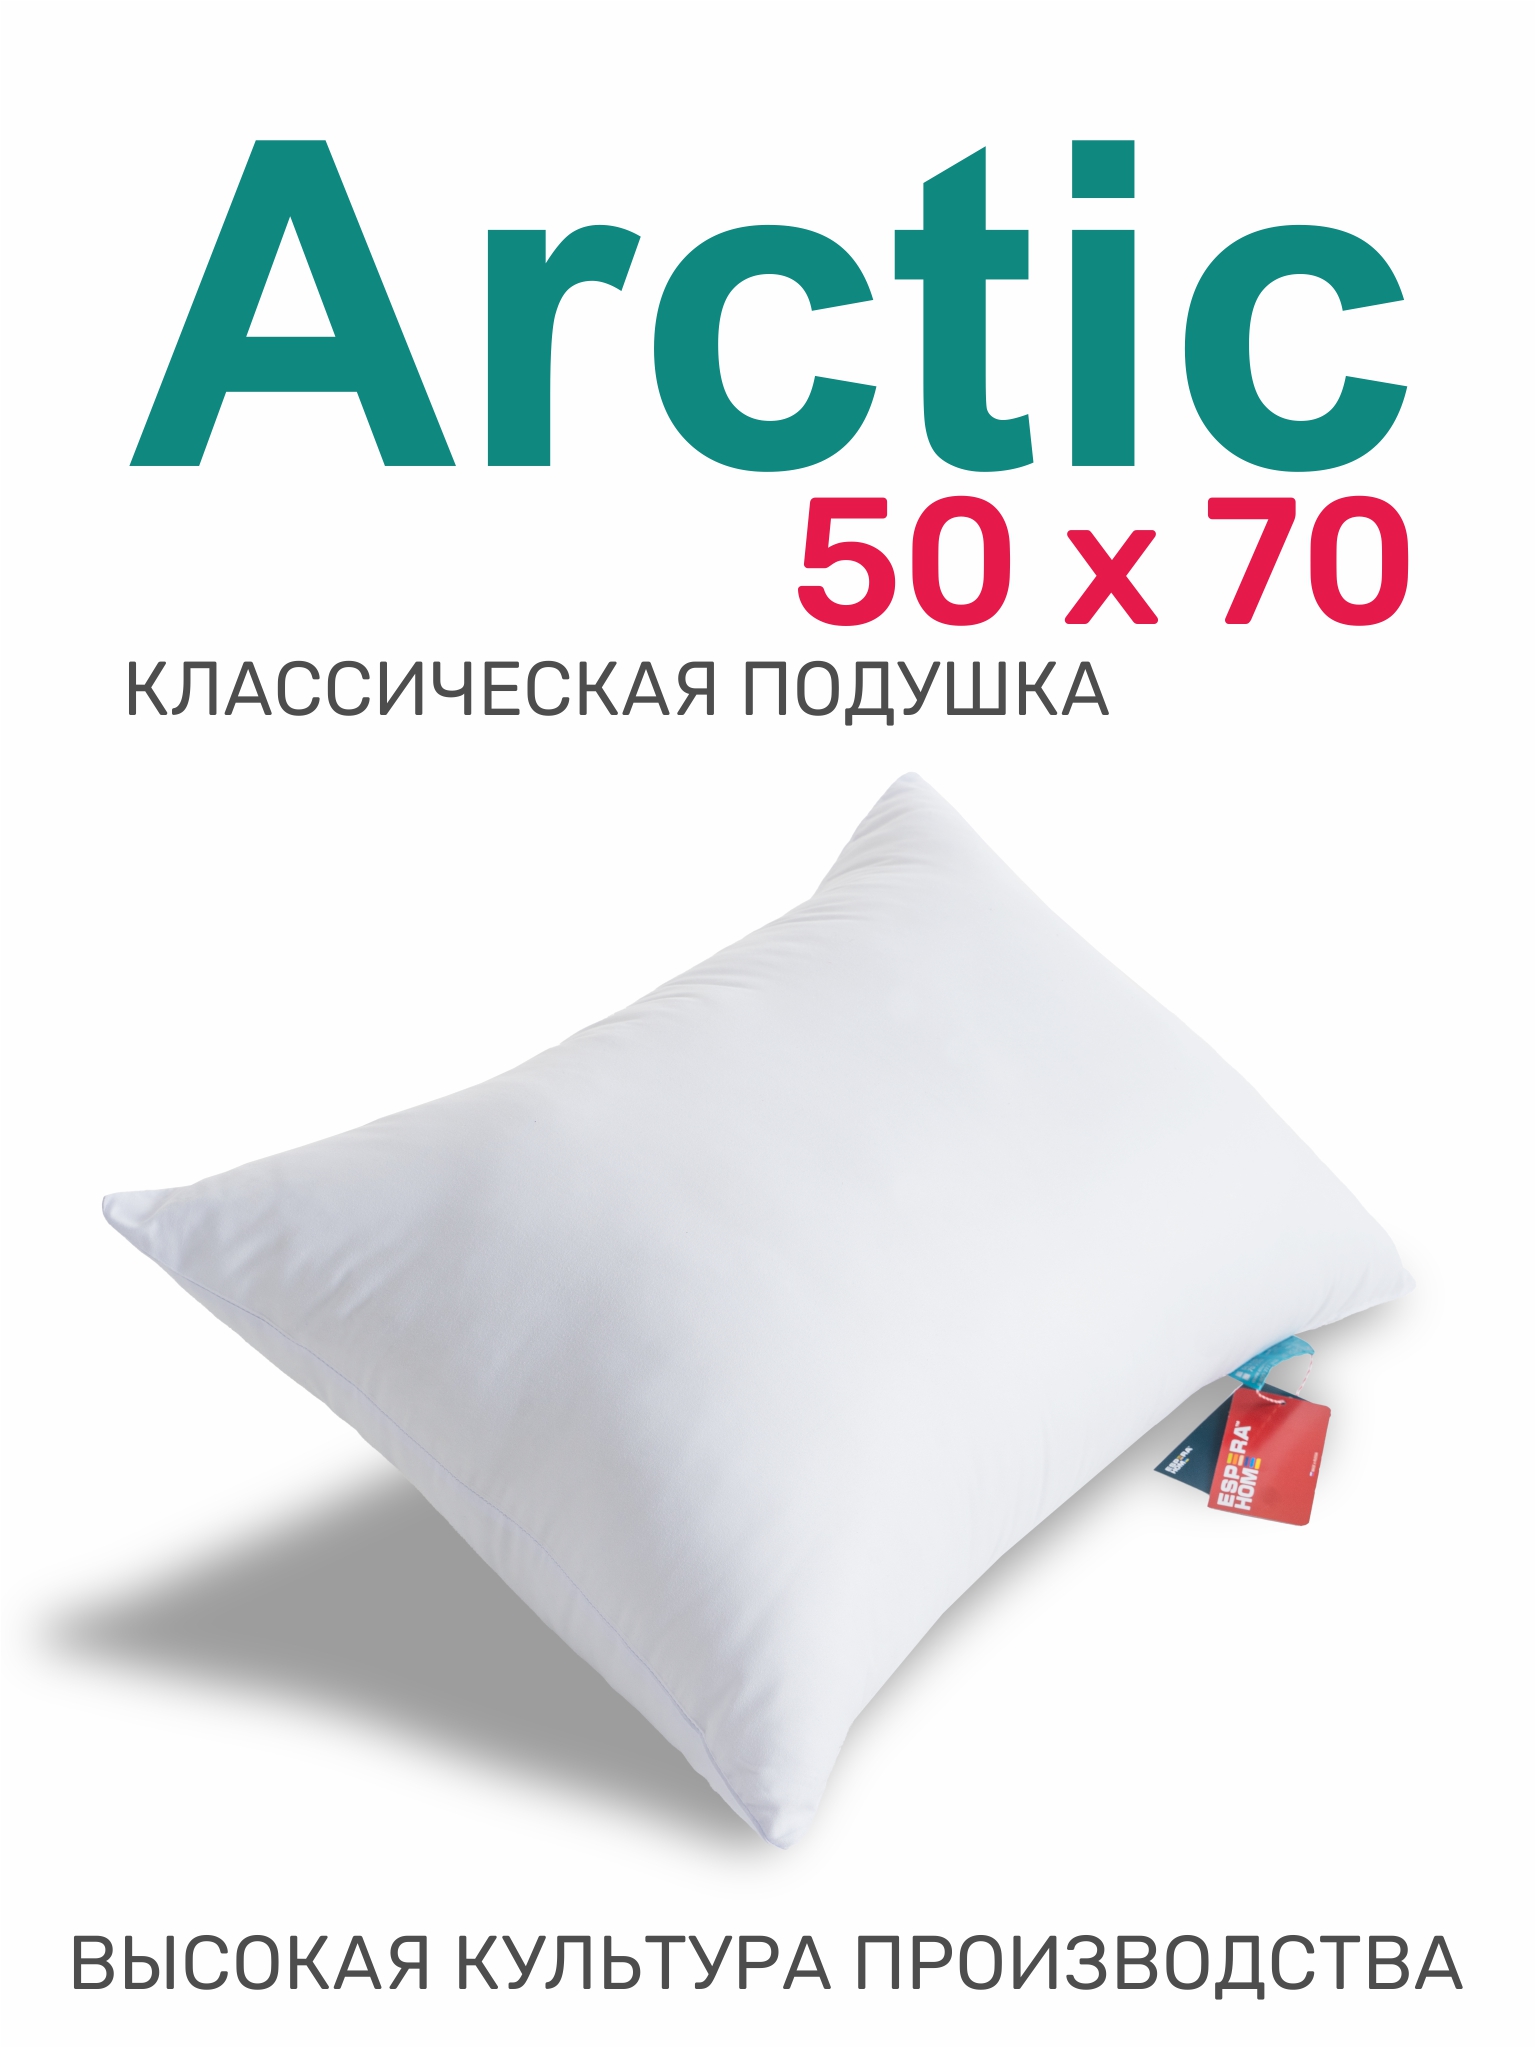  "Arctic", 5070